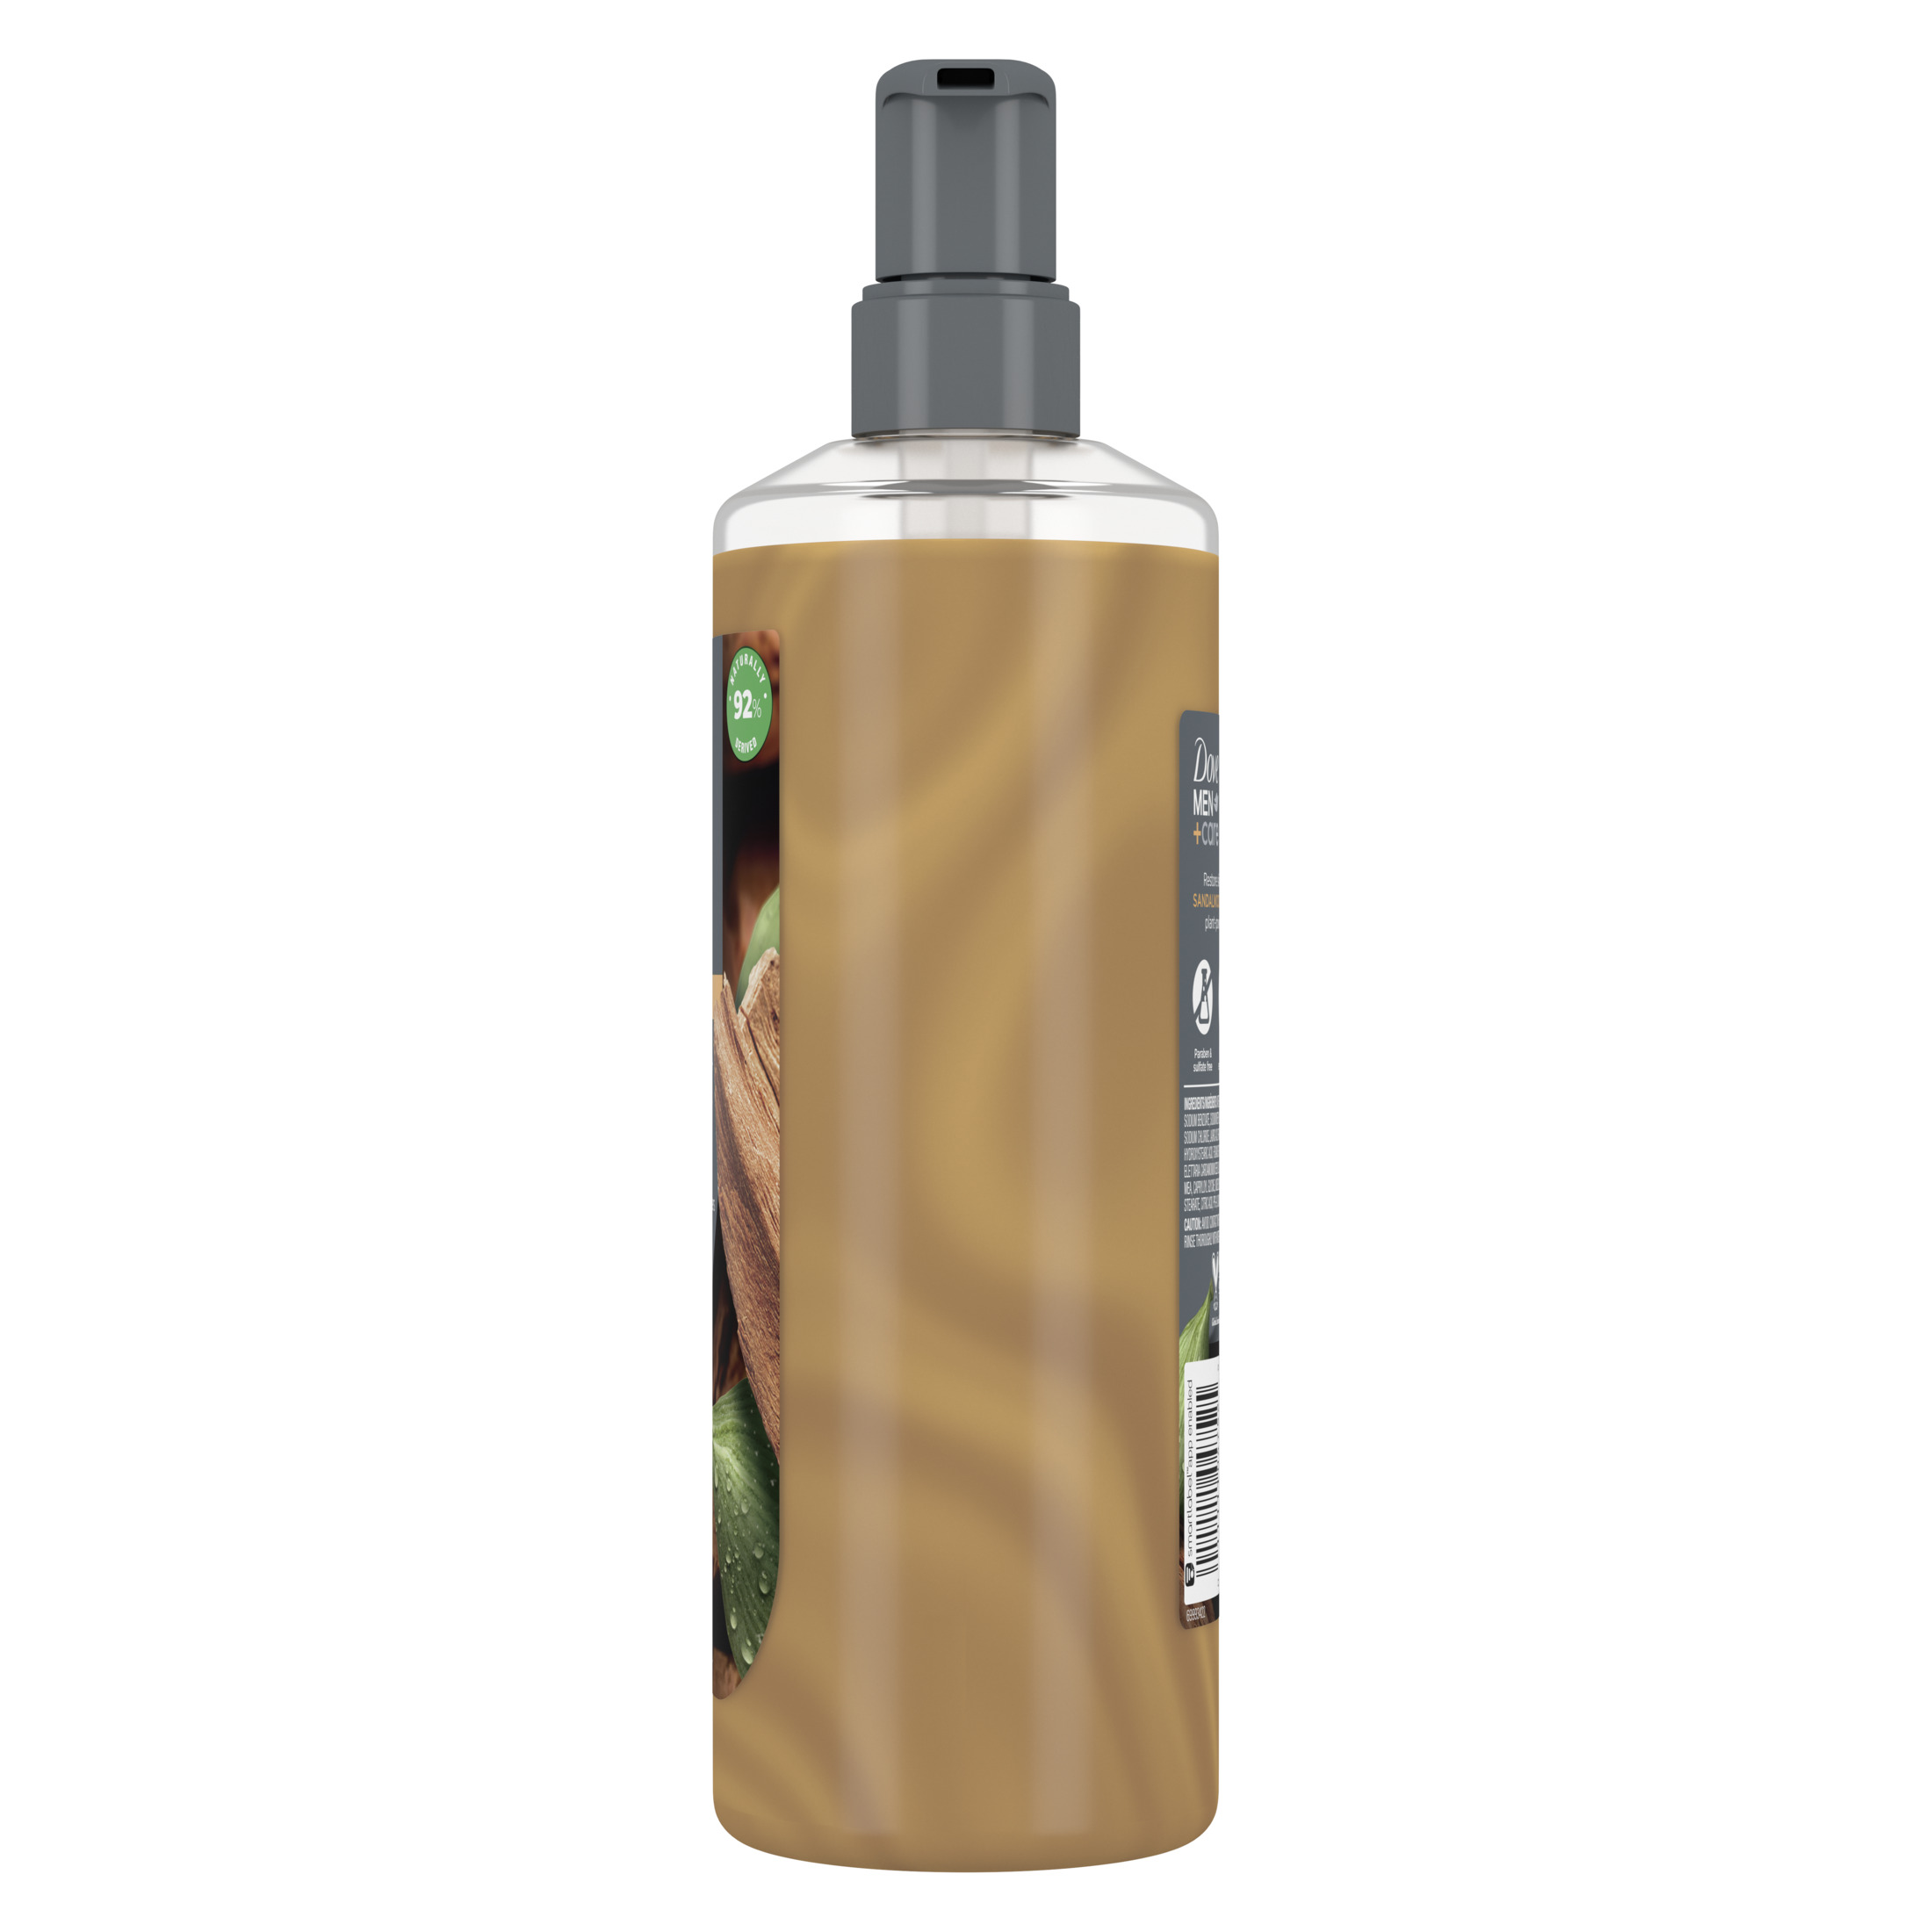 Dove Men+Care Plant-Based Body Wash Sandalwood + Cardamom Oil, 26 oz - image 5 of 7